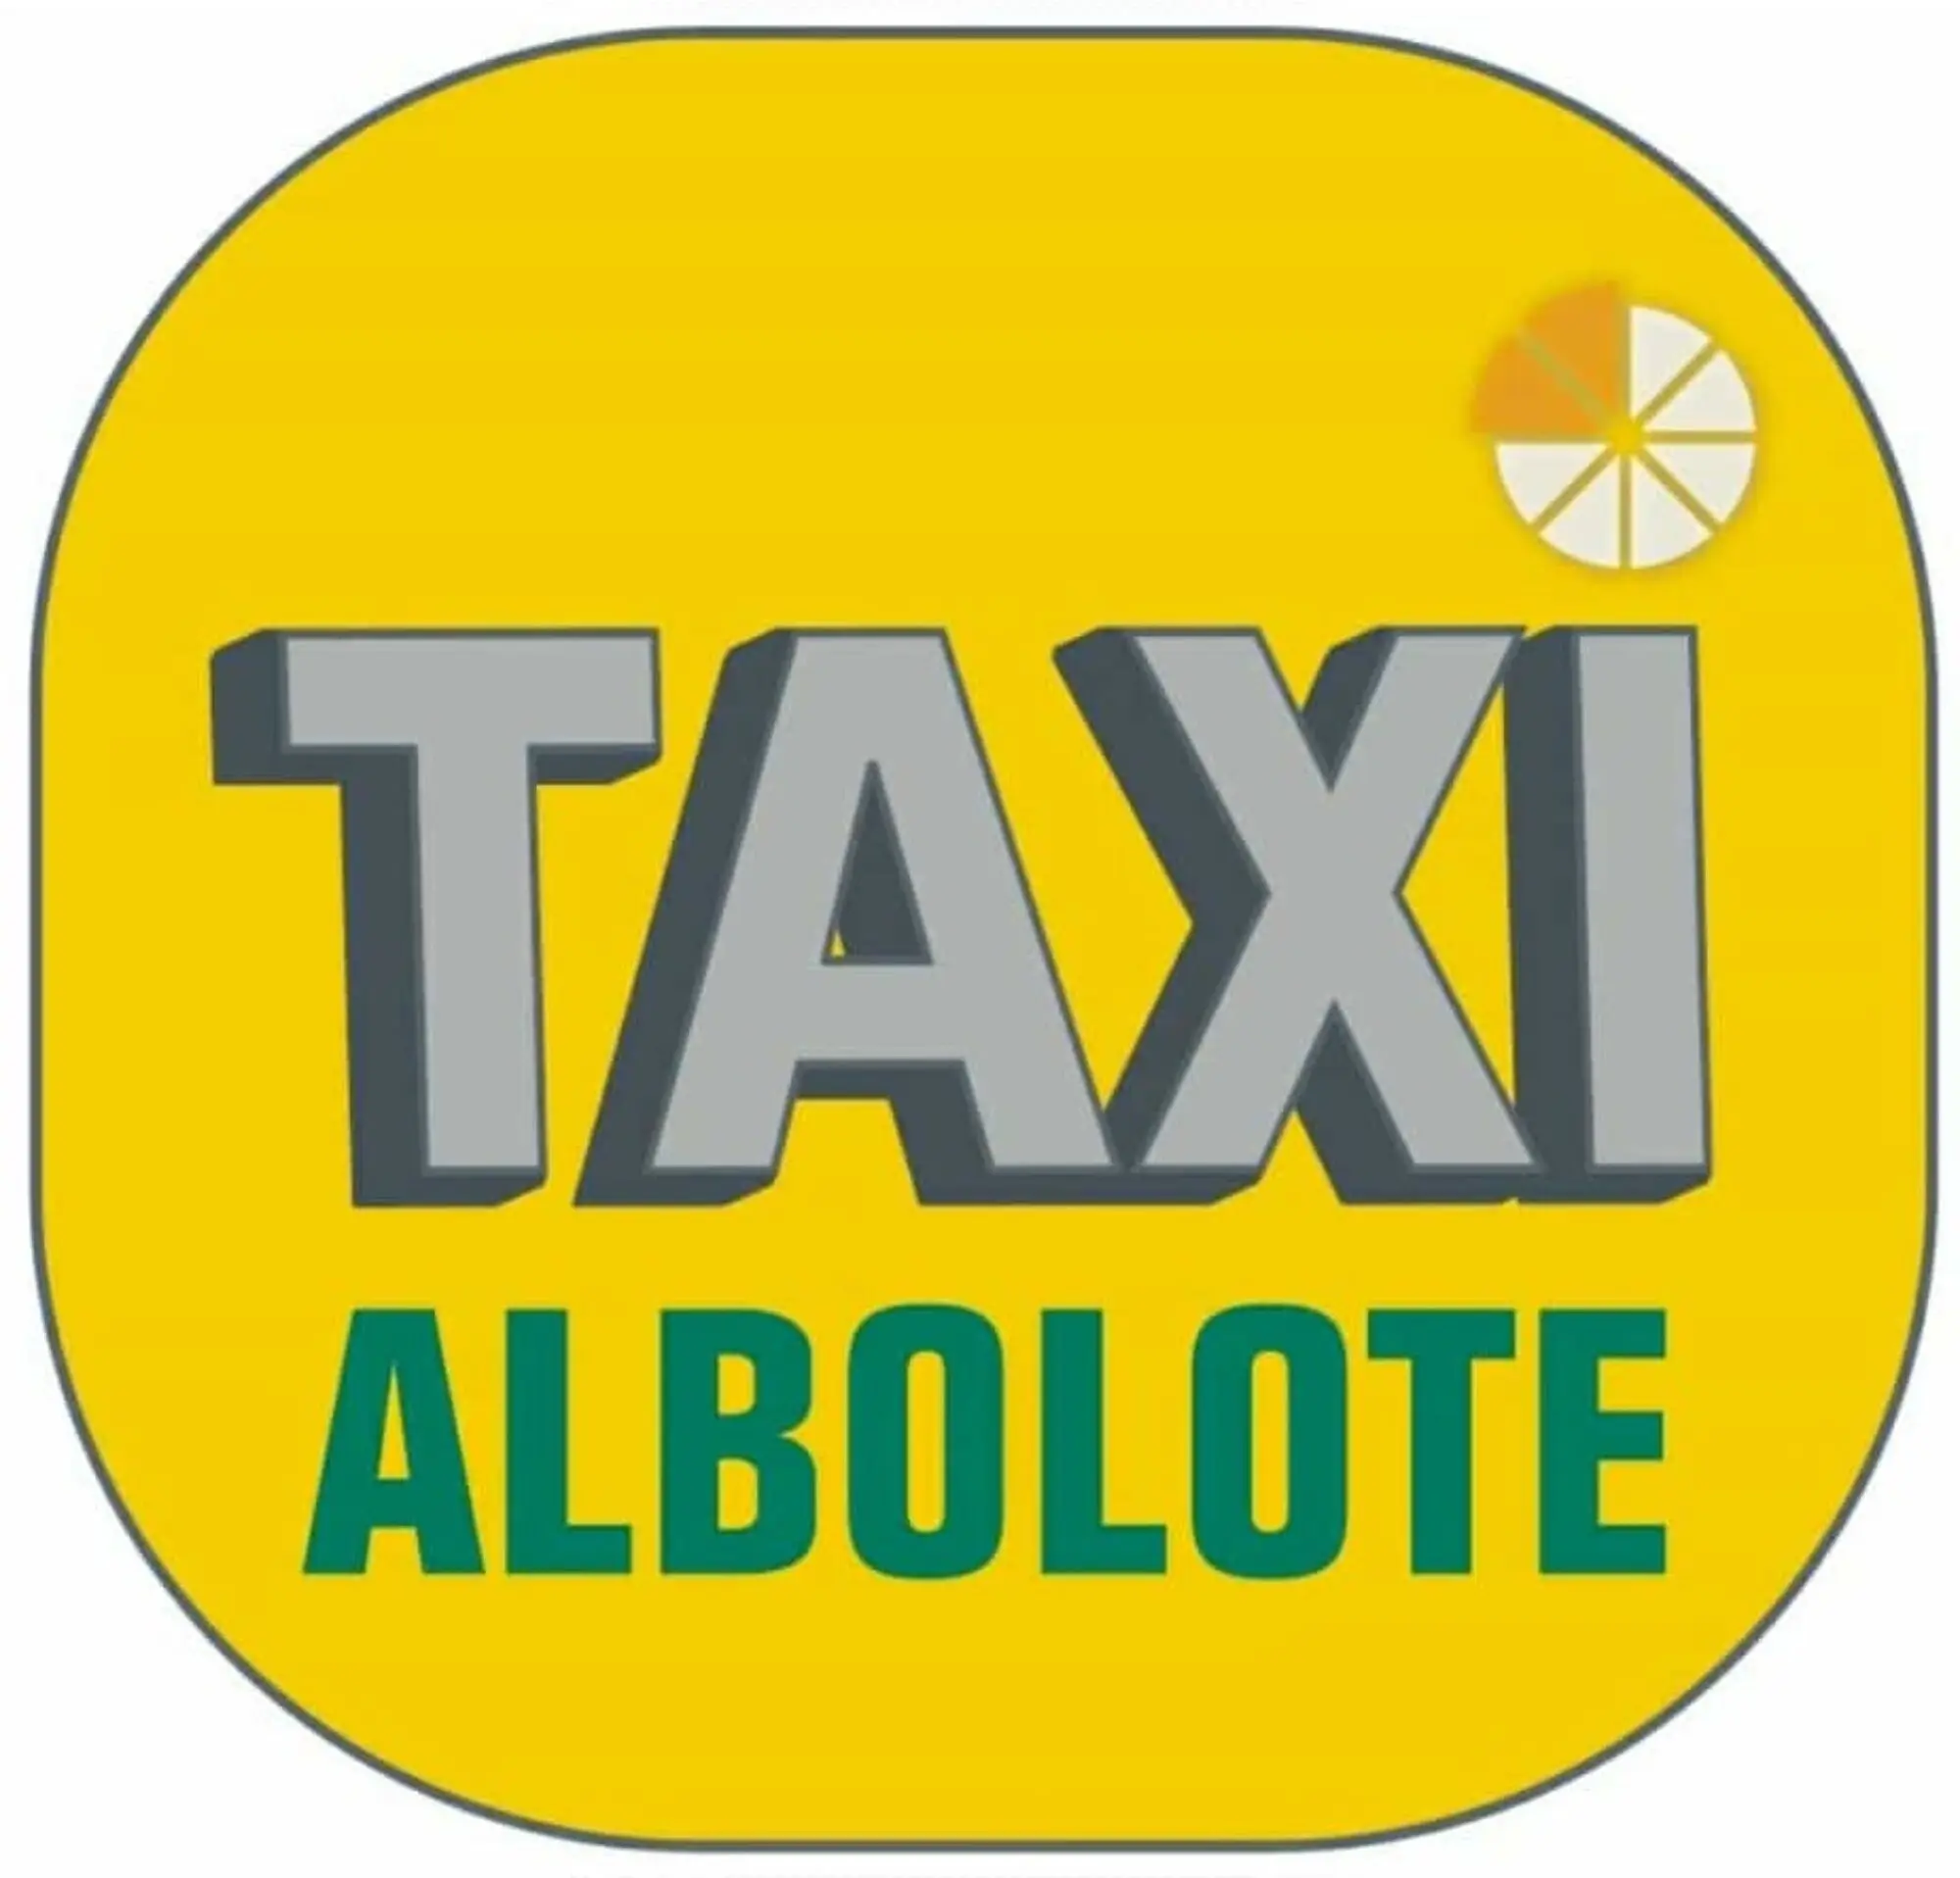 taxi en albolote - Cuánto cuesta un taxi de Albolote a Granada